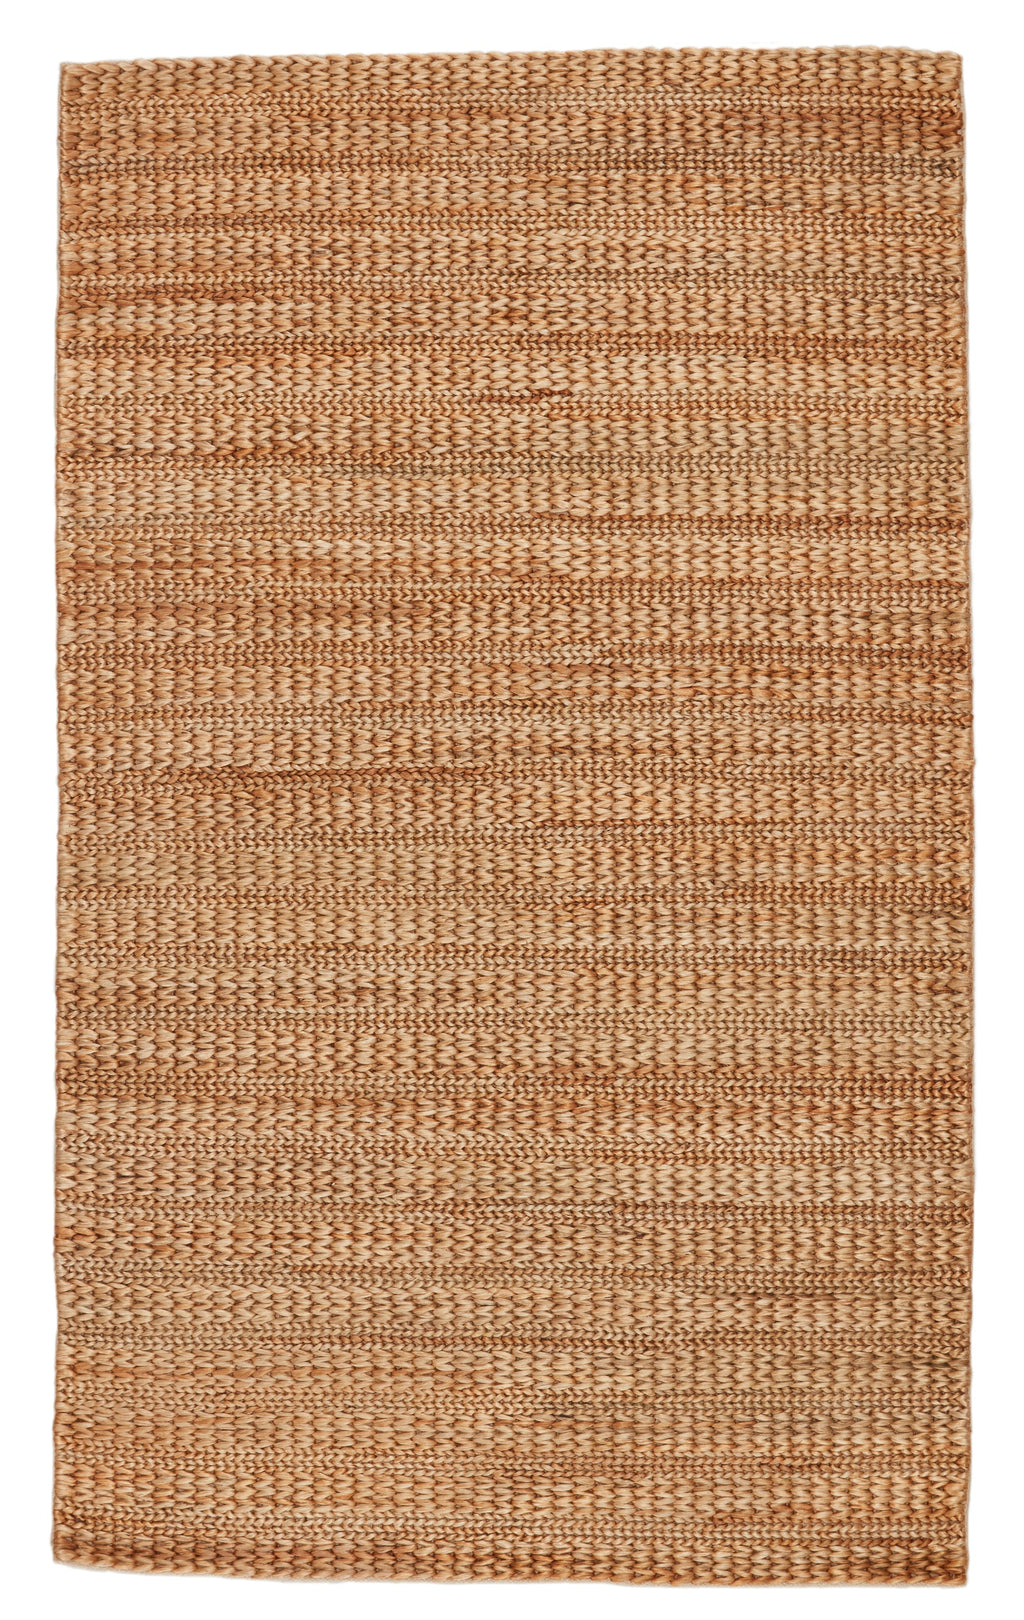 poncy solid rug in tan design by jaipur 1